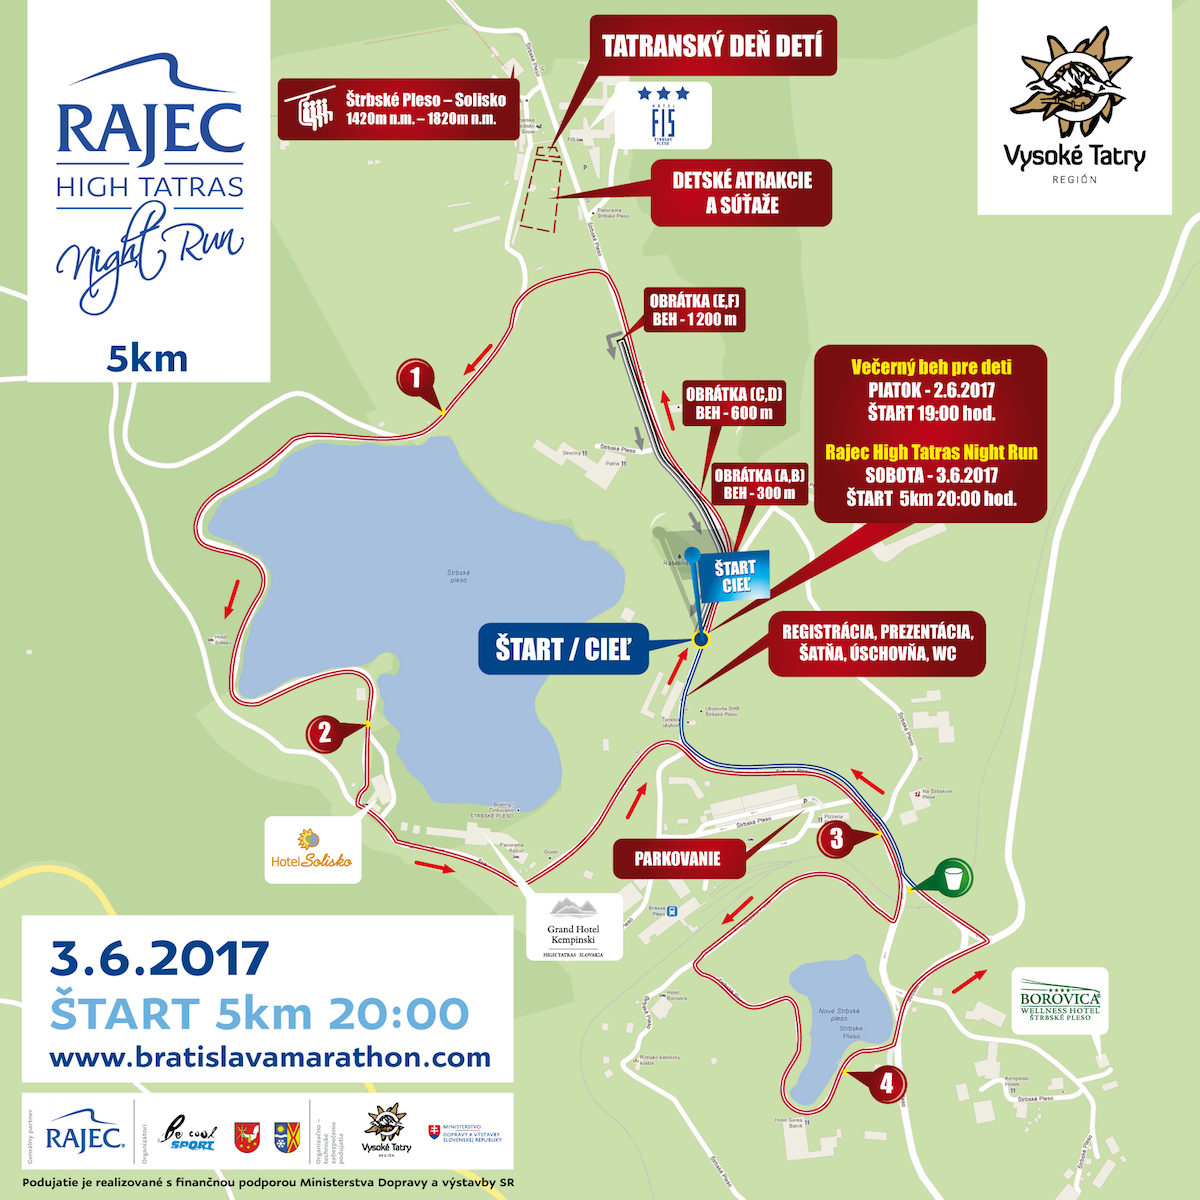 Rajec High Tatras Night Run (trať na 5 km)